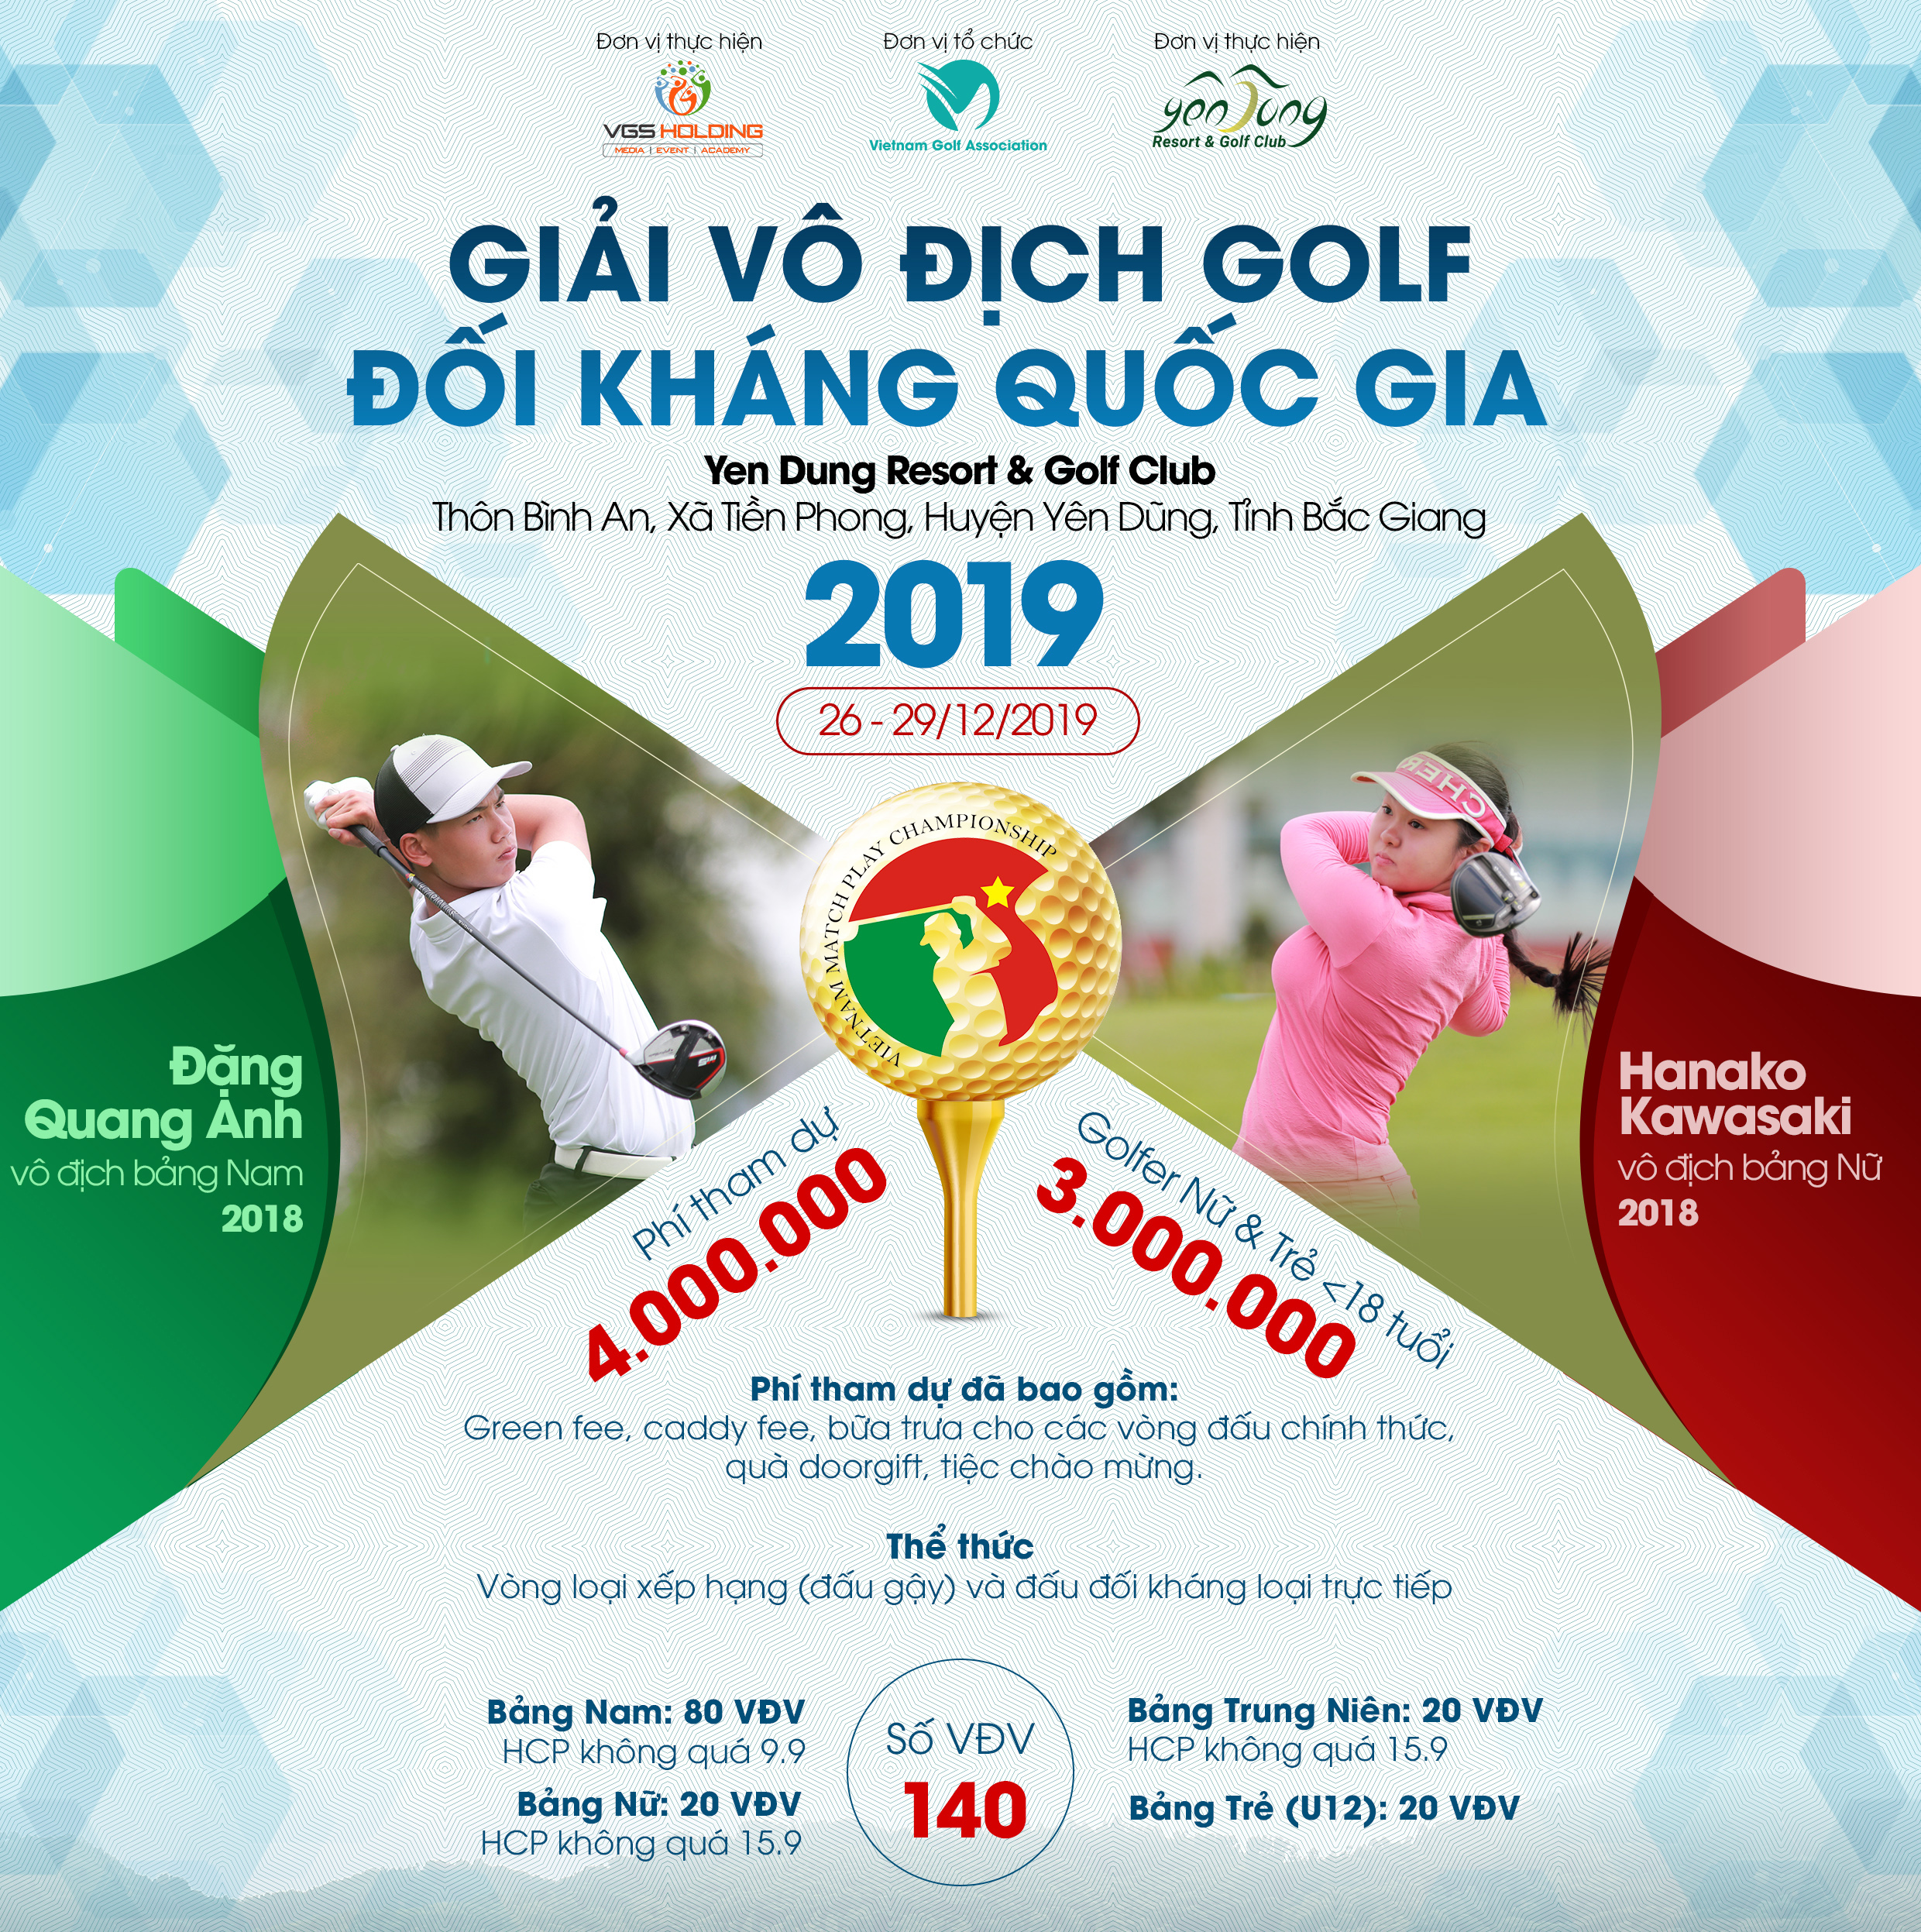 Vô địch Đối kháng nghiệp dư Quốc gia 2019: Giải golf được mong đợi vào cuối tháng 12